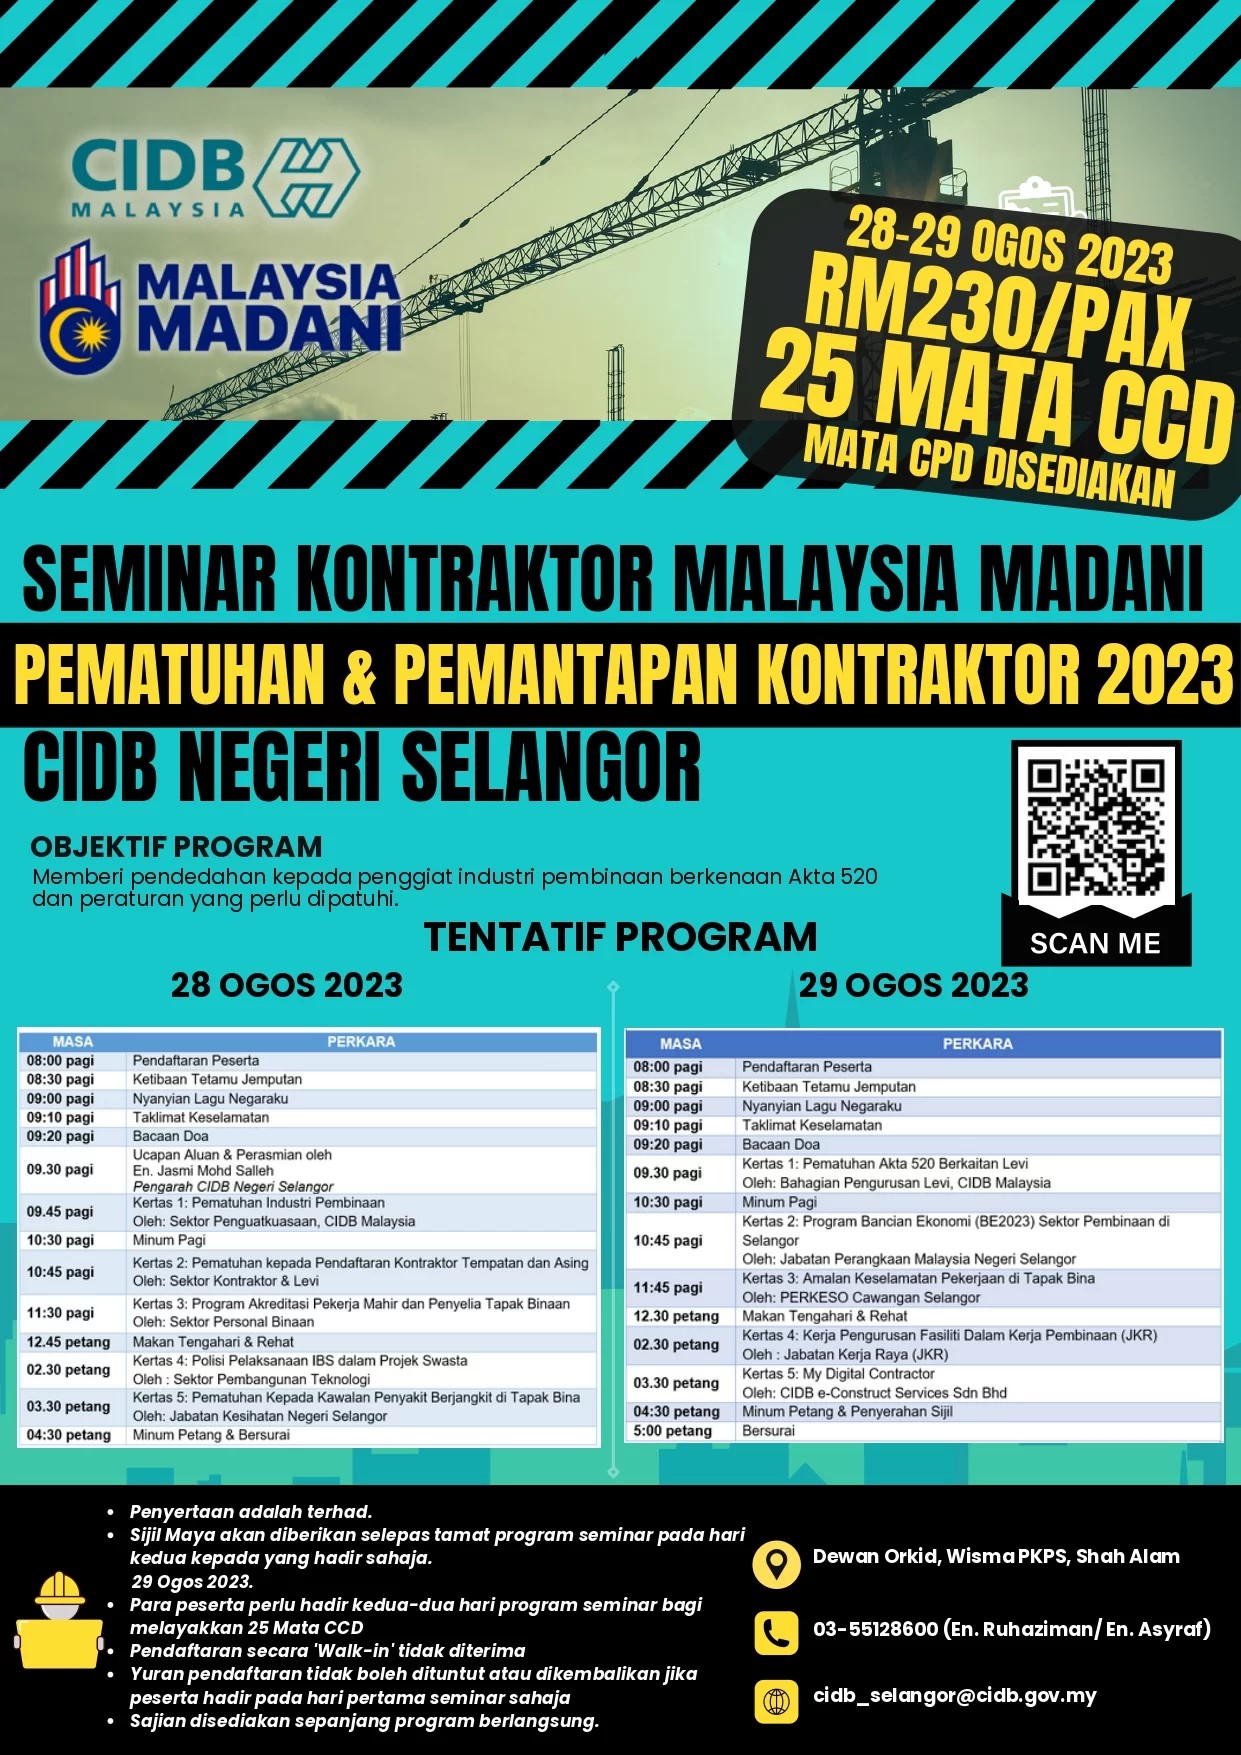 Seminar Kontraktor Malaysia MADANI Pematuhan & Pemantapan Kontraktor 2023